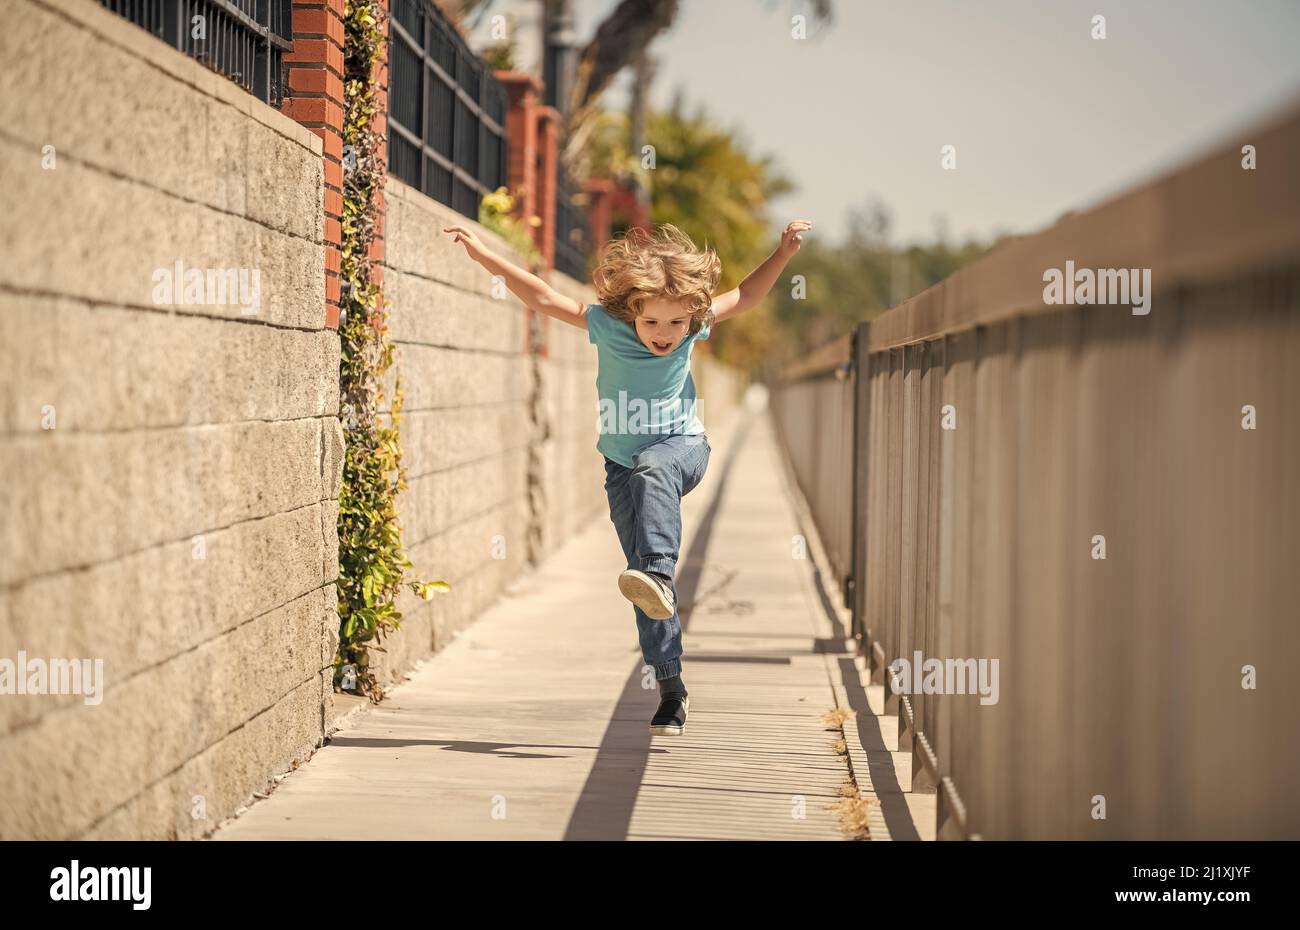 Wenn Sie ein aktives Leben führen, seien Sie glücklich und energisch. Energischer Kinderlauf auf der Promenade. Spaß in der Kindheit Stockfoto